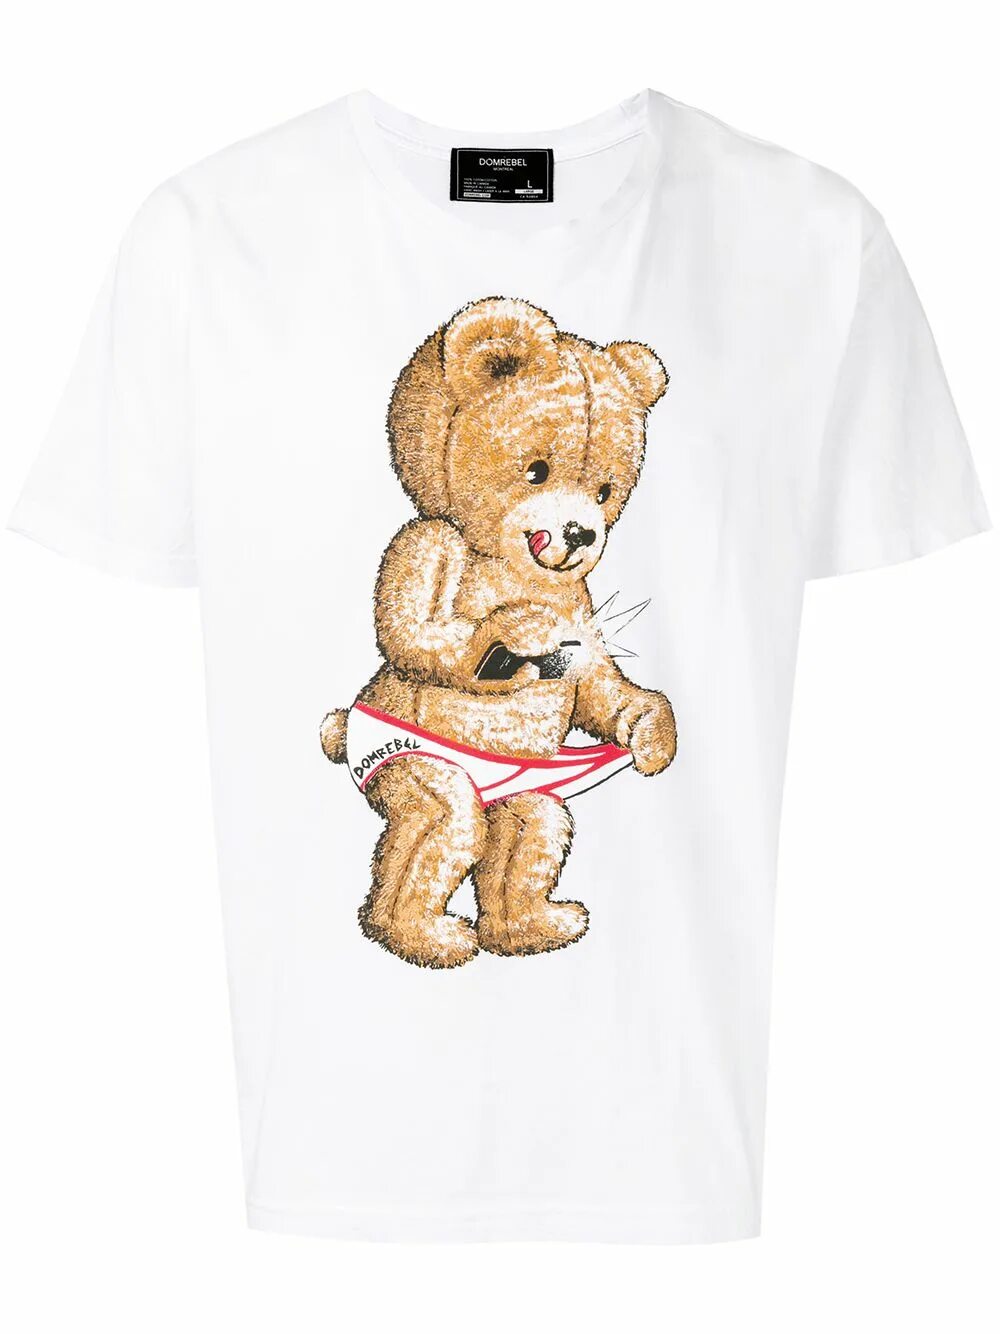 Футболка dom Rebel с мишкой. Dom Rebel футболка с медведем. Dom Rebel футболка Teddy с принтом. Футболка с медвежонком.